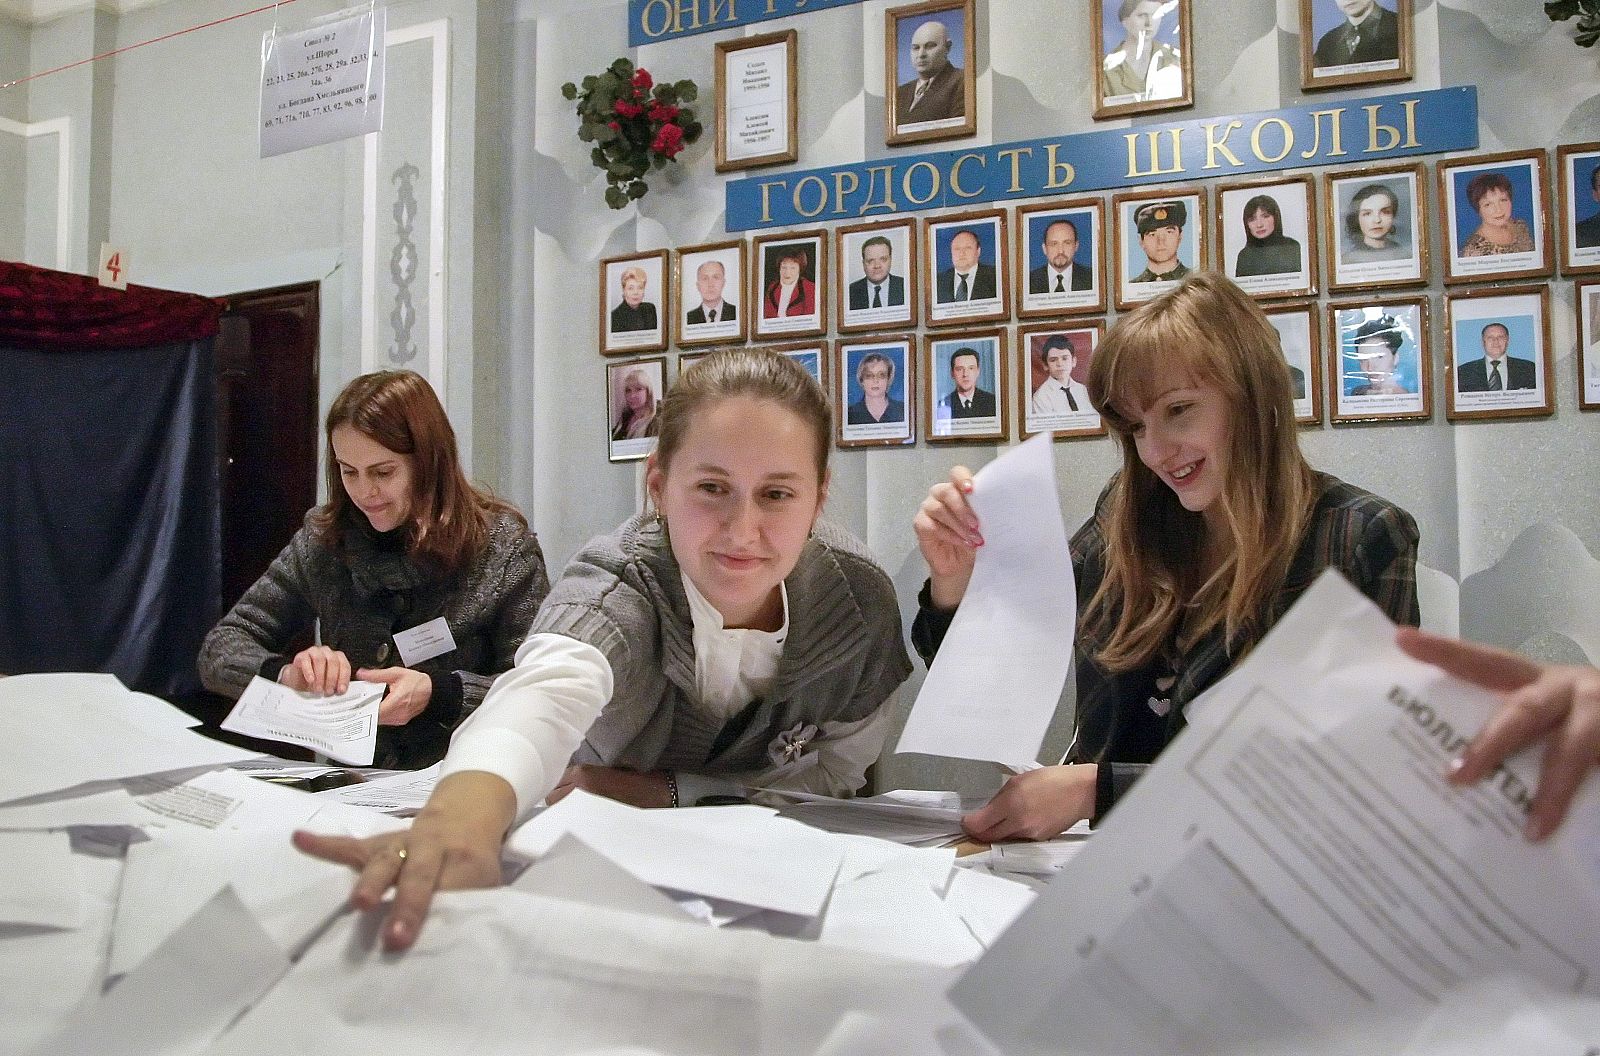 Recuento electoral de las elecciones convocadas por los prorrusos en Donetsk, Ucrania